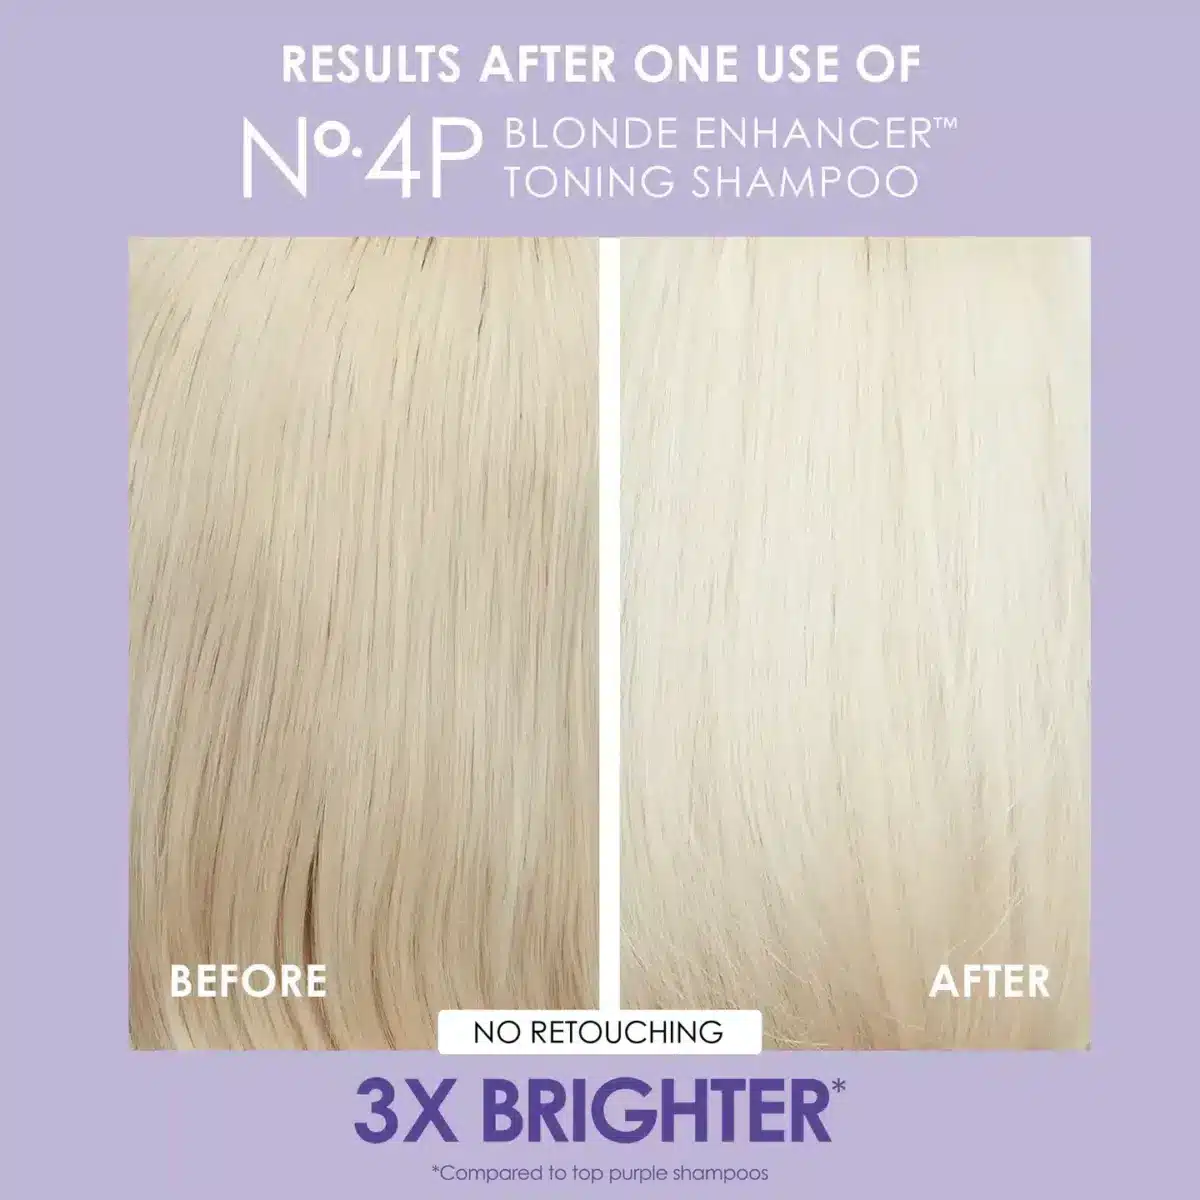 Olaplex No. 4P Blonde Enhancer Shampoo 250ml